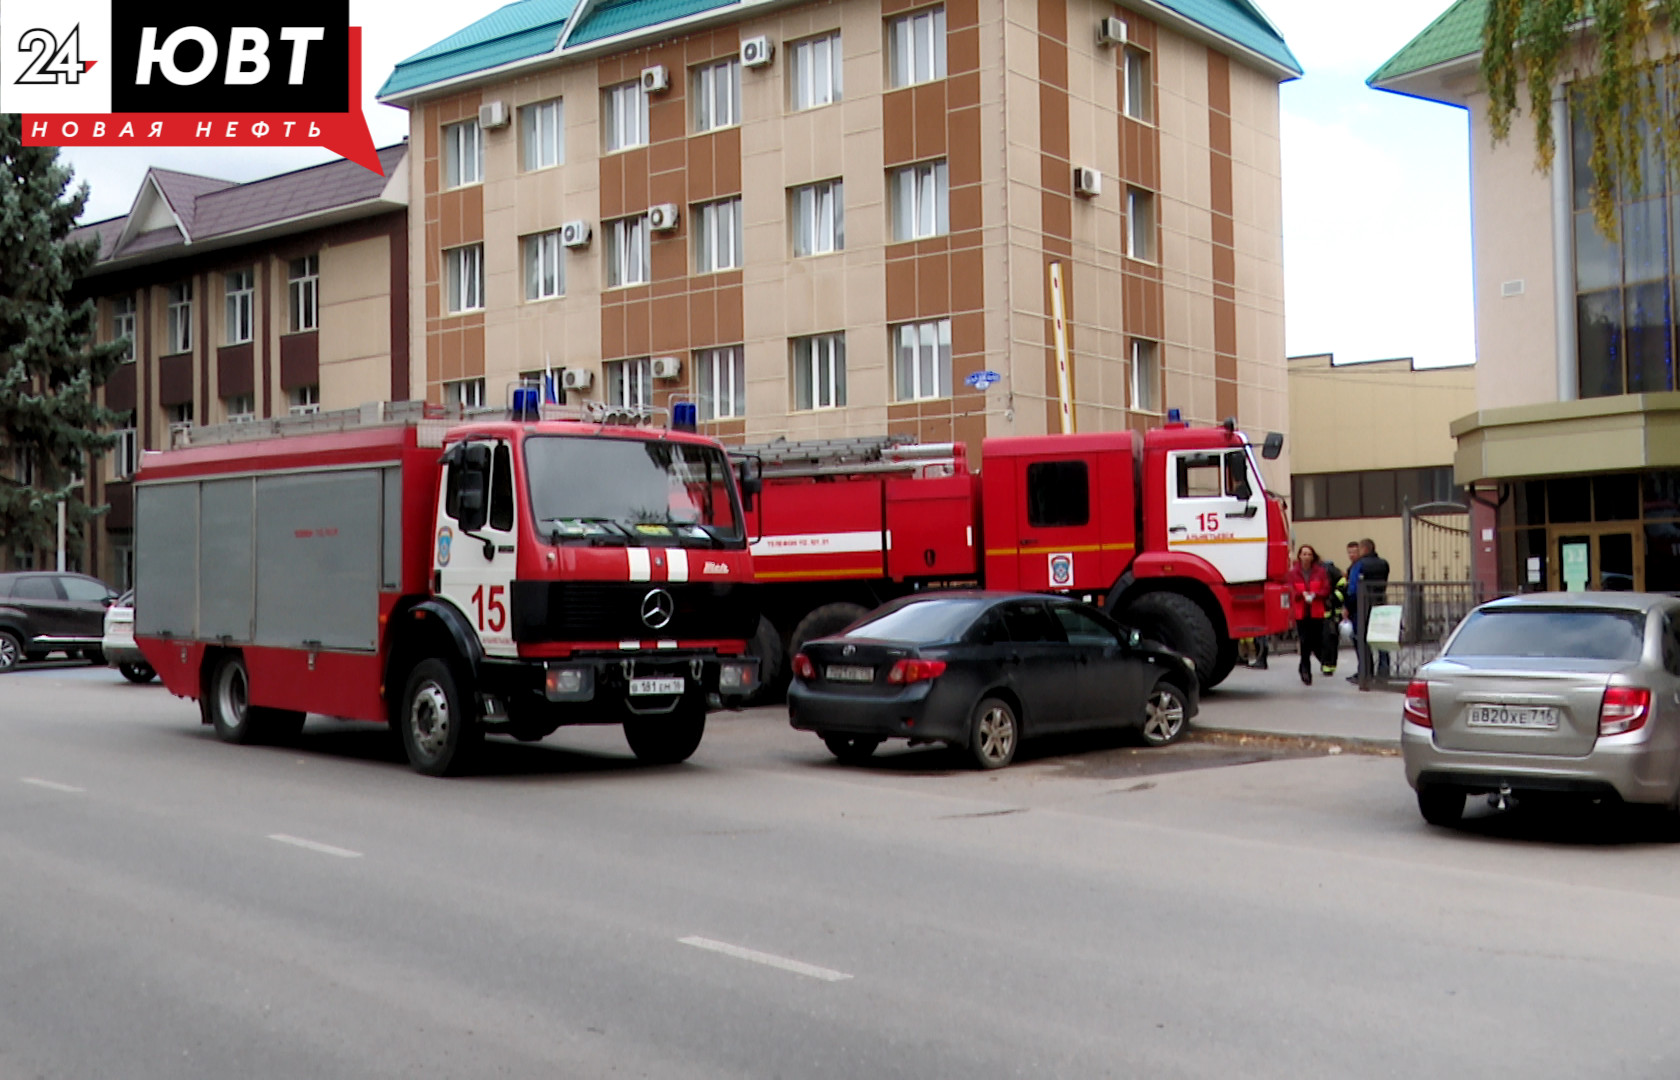 Имитация тушения пожара и эвакуация людей из здания прошли в Альметьевске